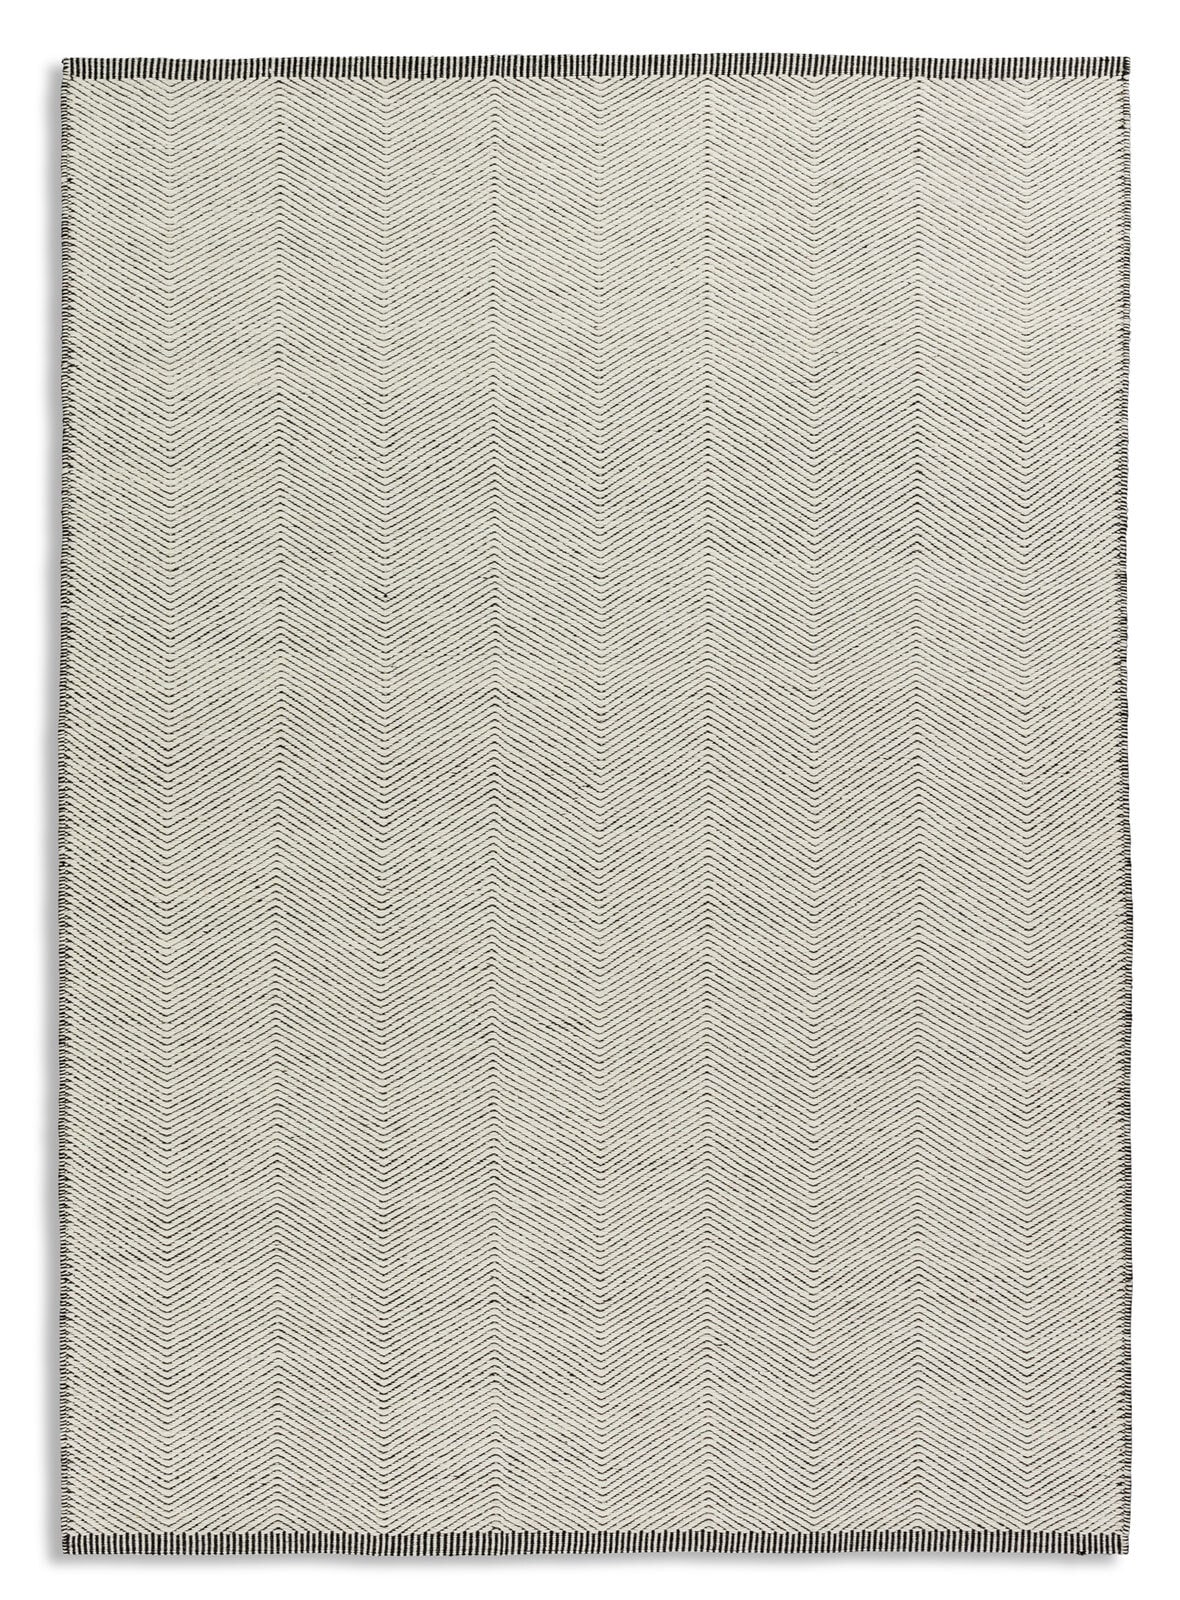 Teppich MERLOT 170 x 240 cm weiß/anthrazit 